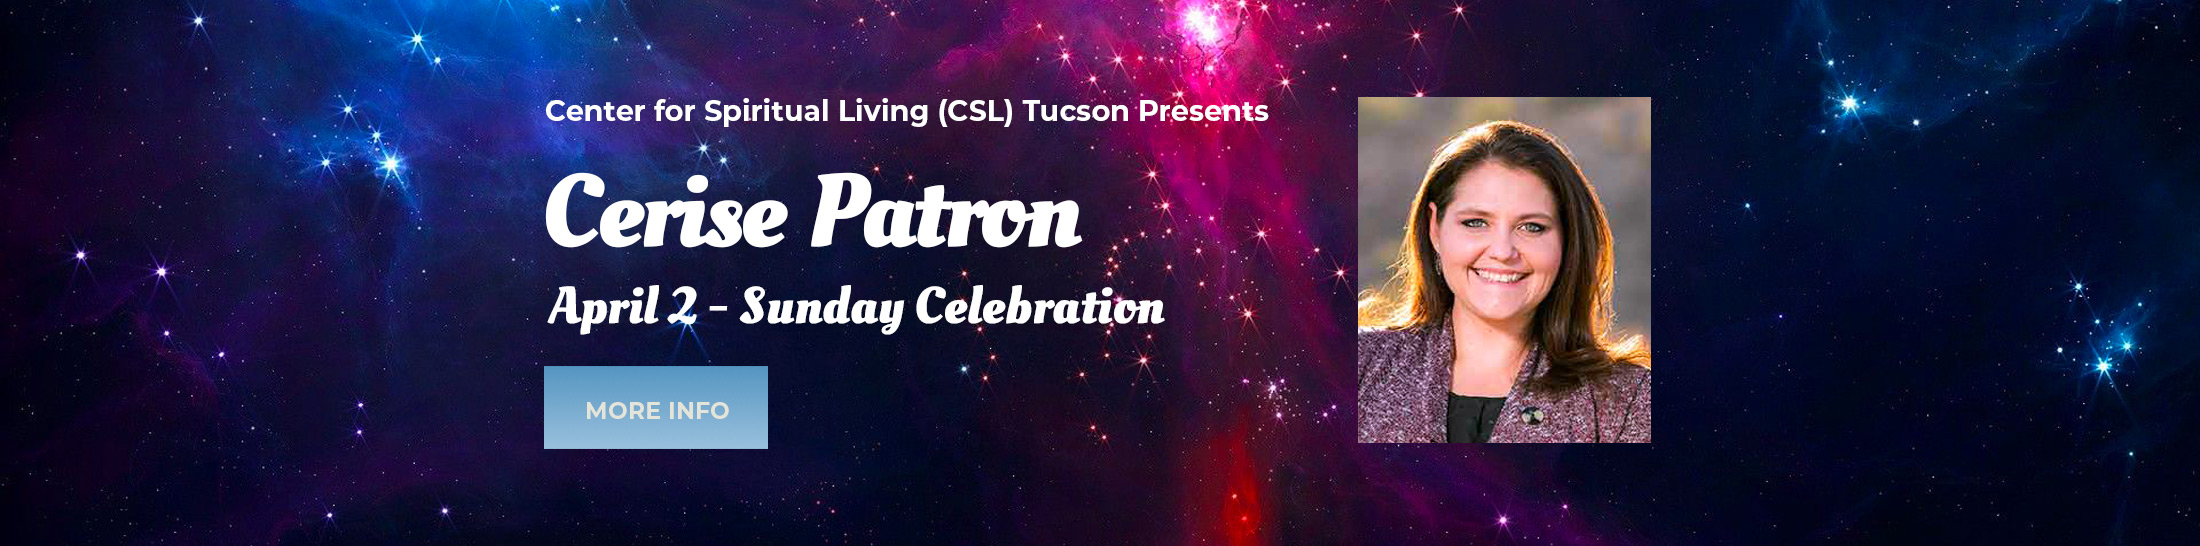 Center for Spiritual Living Tucson